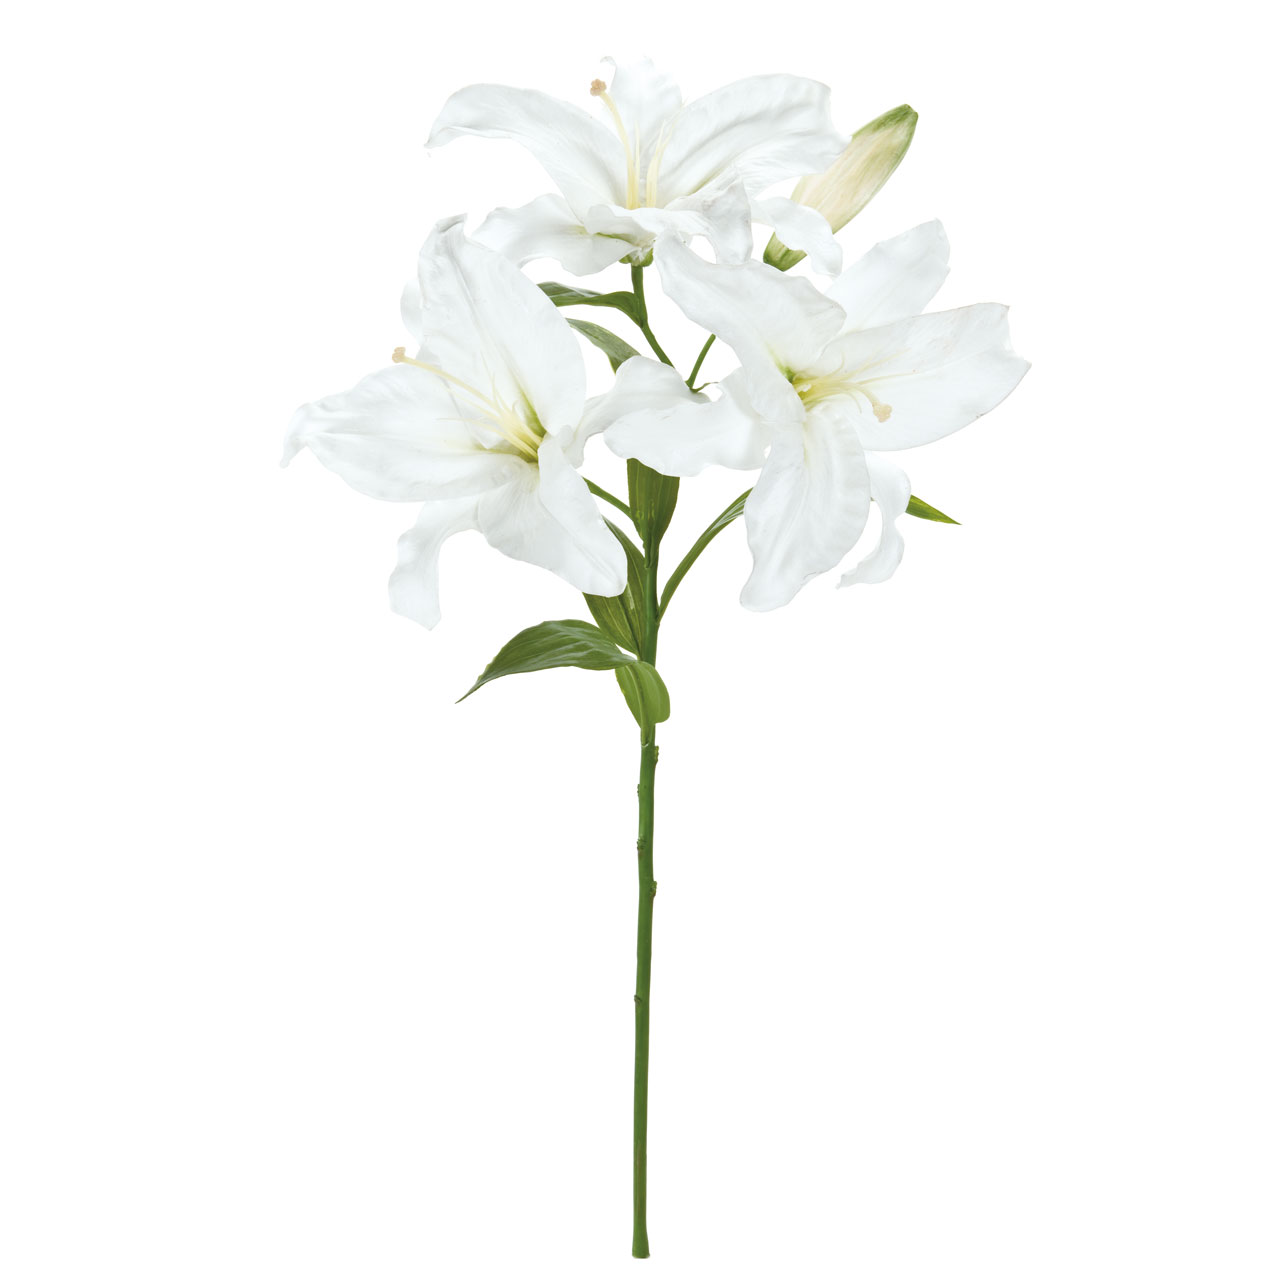 マイフラ 通販 Winward オードリー カサブランカ 3輪咲き ホワイト アーティフィシャルフラワー 造花 Fw ユリ 花径 約24 26 全長 約70cm ホワイト Magiq アーティフィシャルフラワー 造花 全国にmagiq 花器 花資材などをお届けします